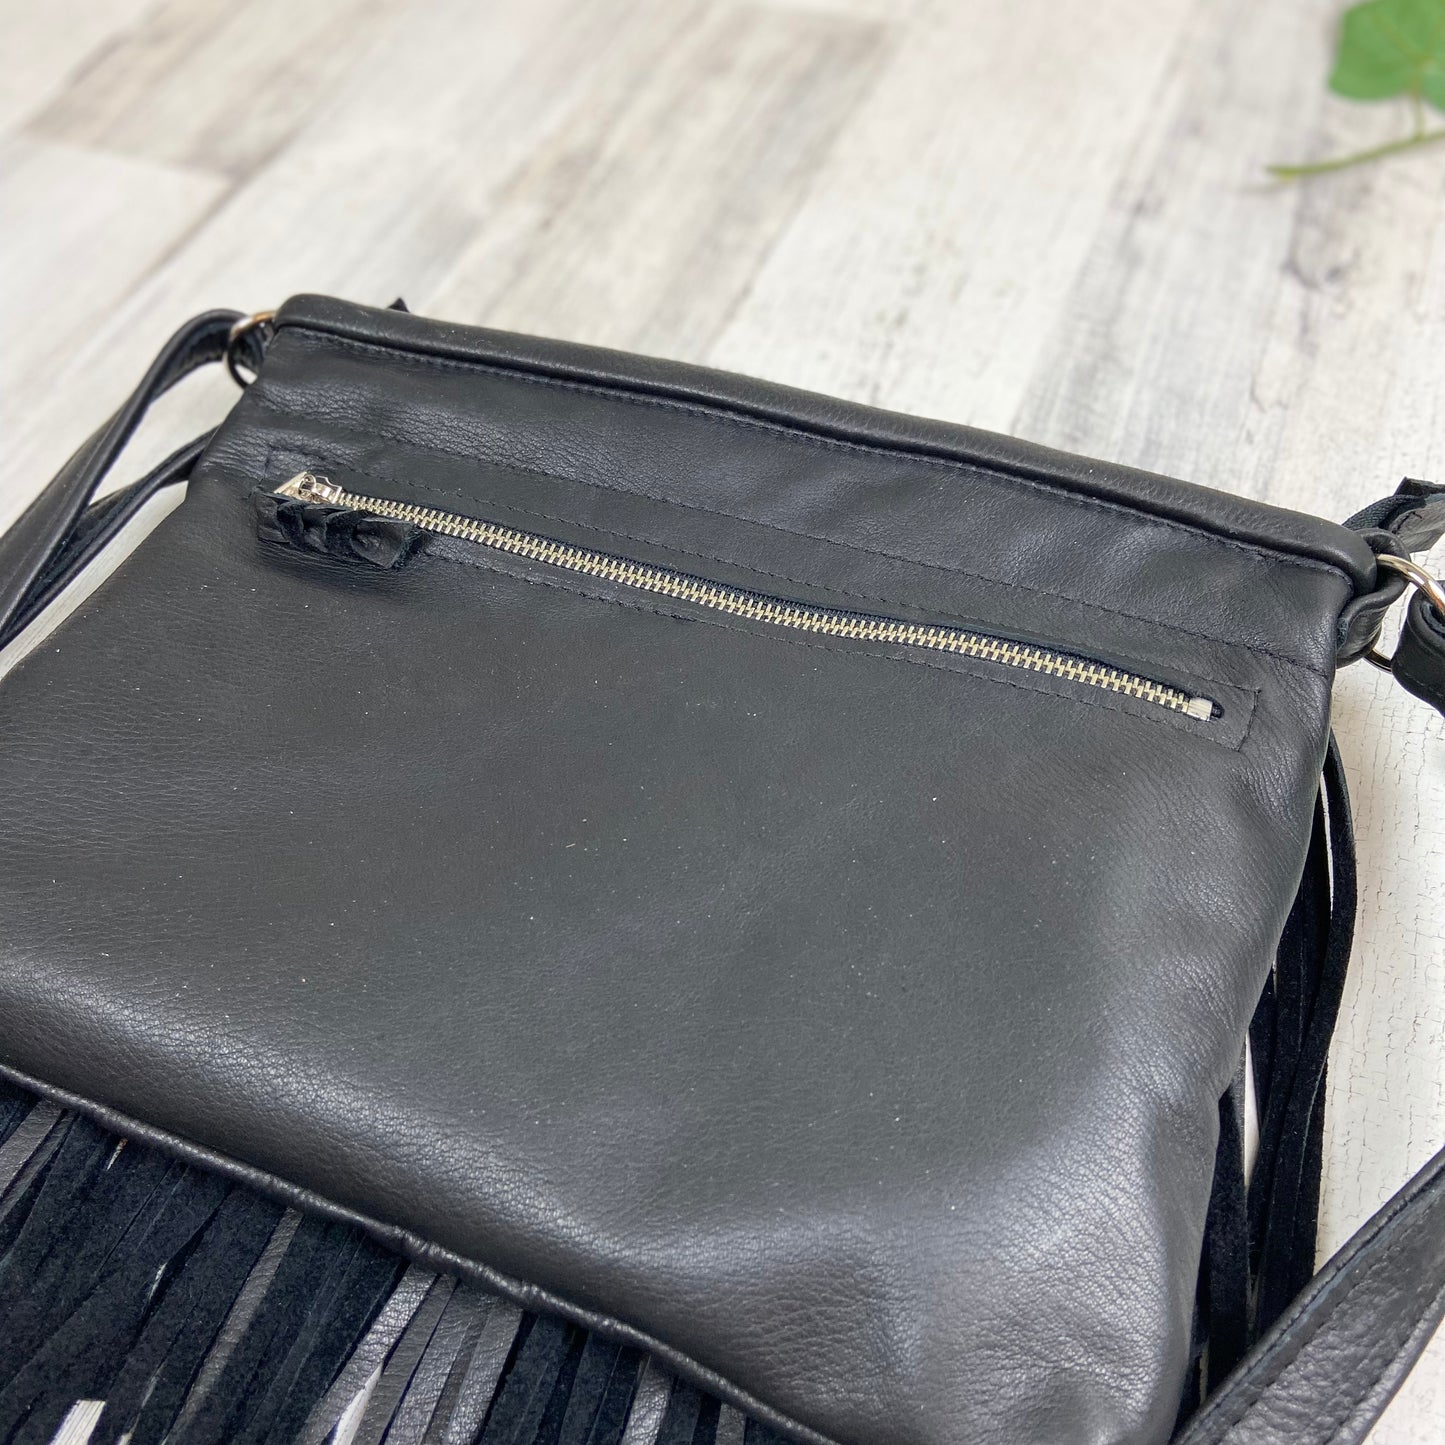 Sierra - Large Fringe Bag